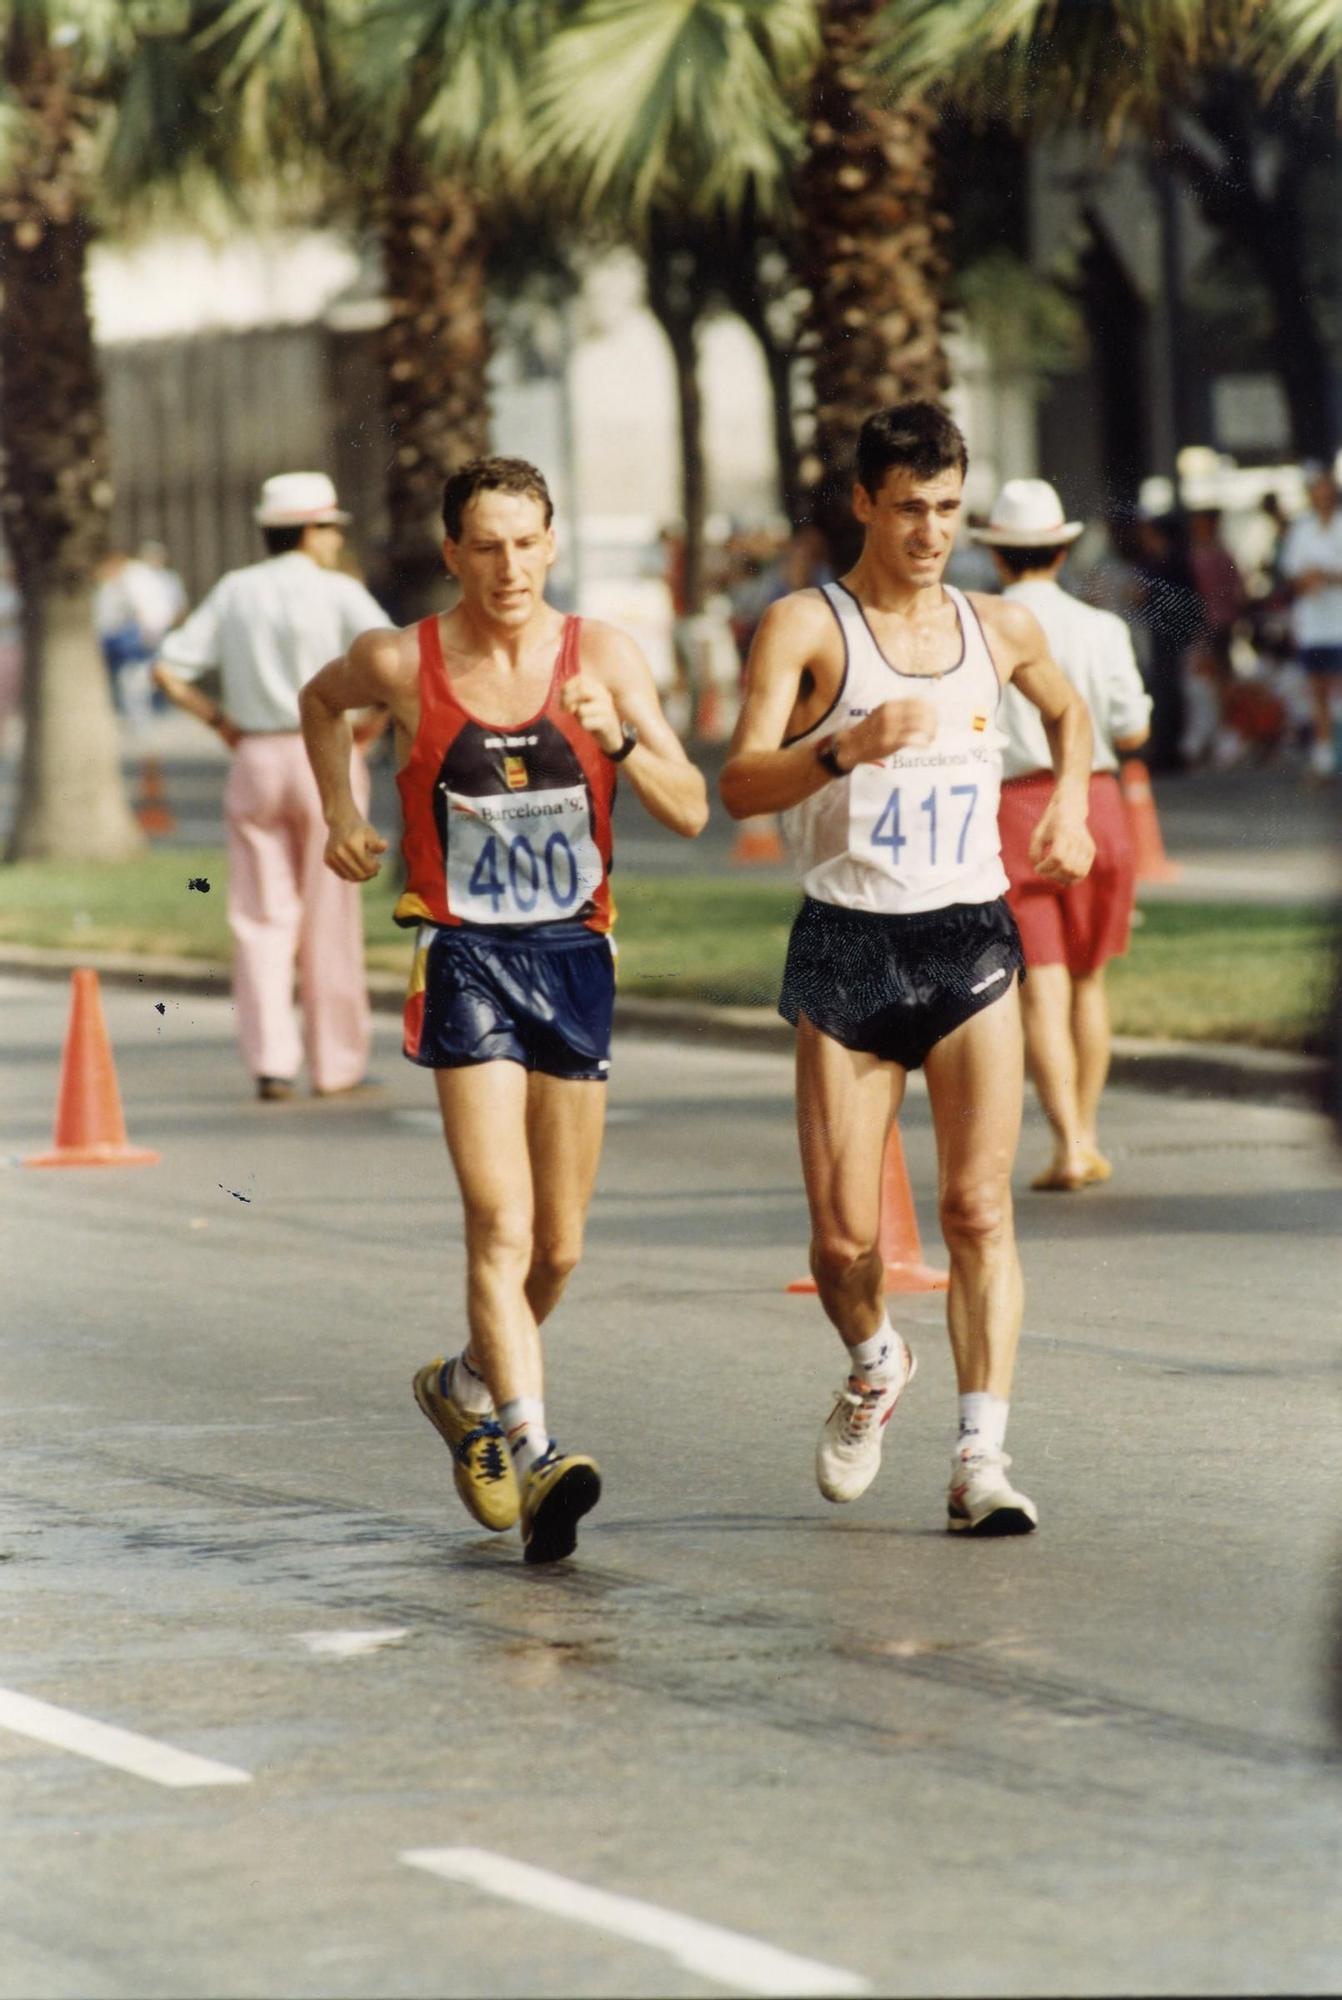 Barcelona'92 fueron los primeros Juegos Olímpicos de García Bragado